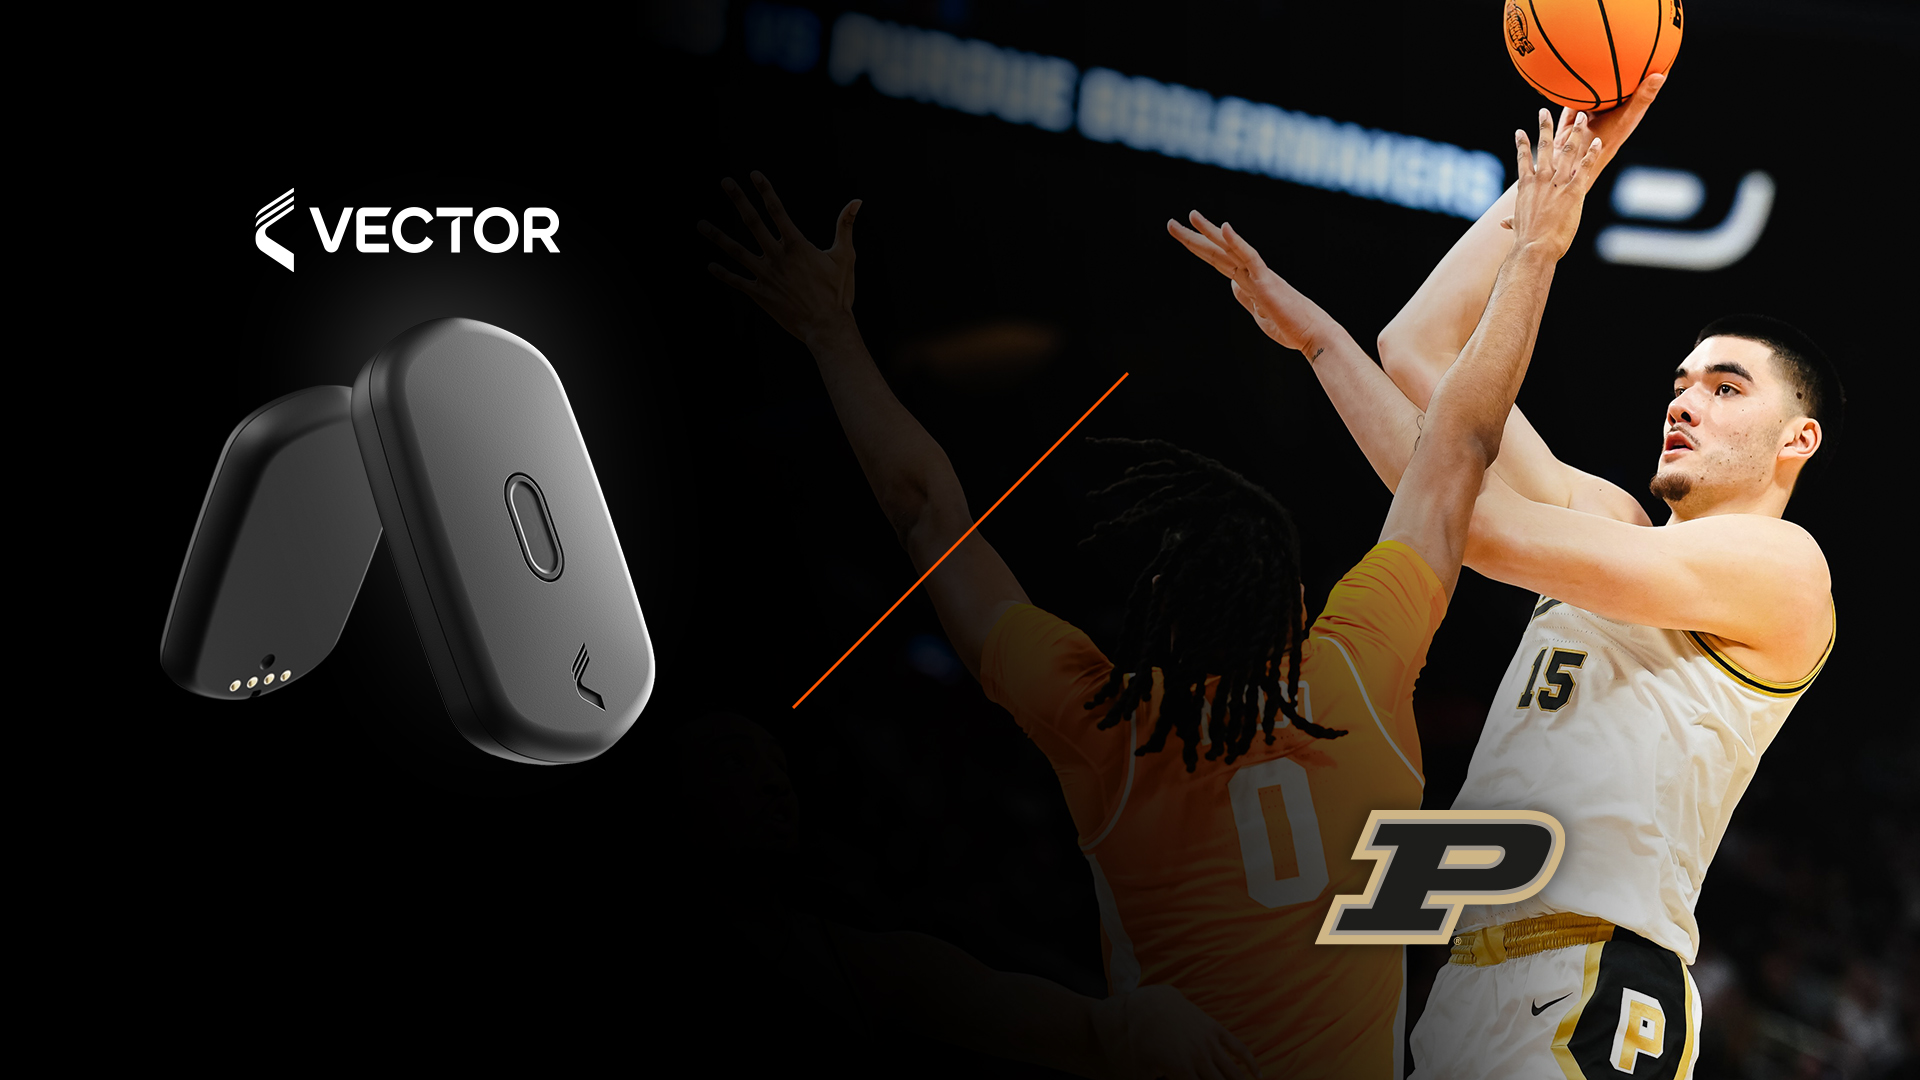 Gráfico promocional de un dispositivo de monitoreo deportivo Vector T7 con un jugador de baloncesto de Purdue en acción, listo para lanzar la pelota.